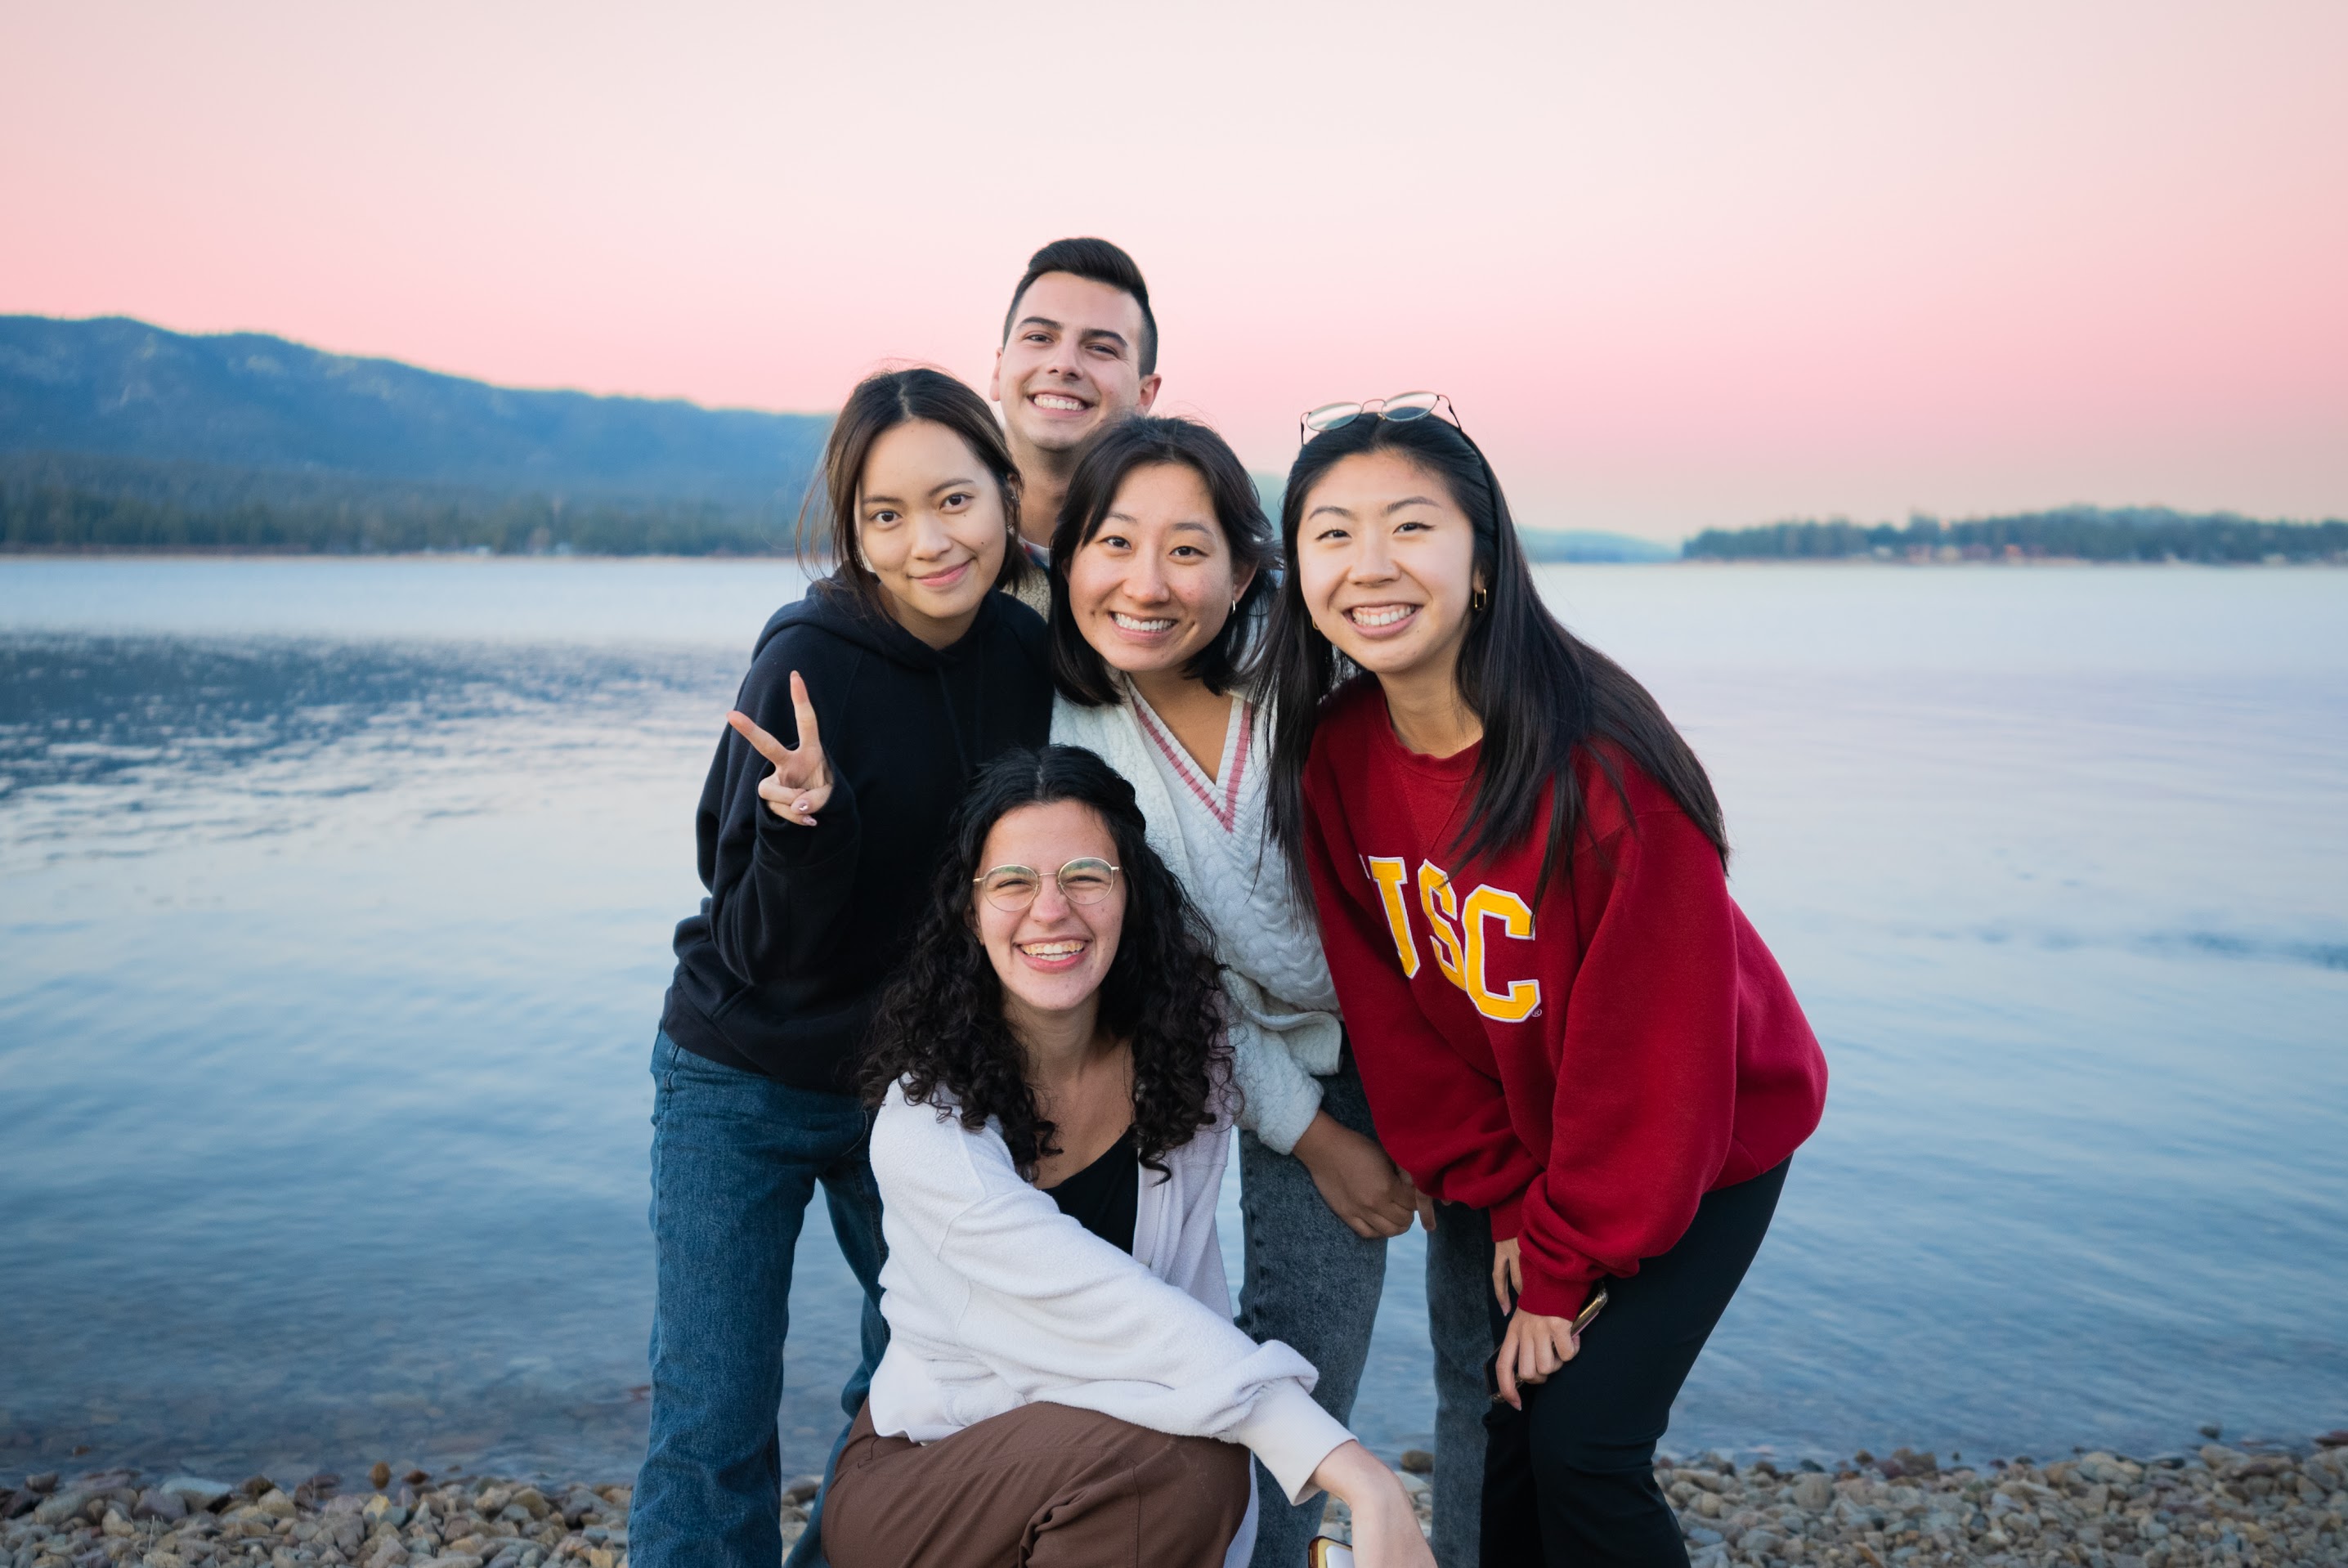 5 college students at Big Bear Lake